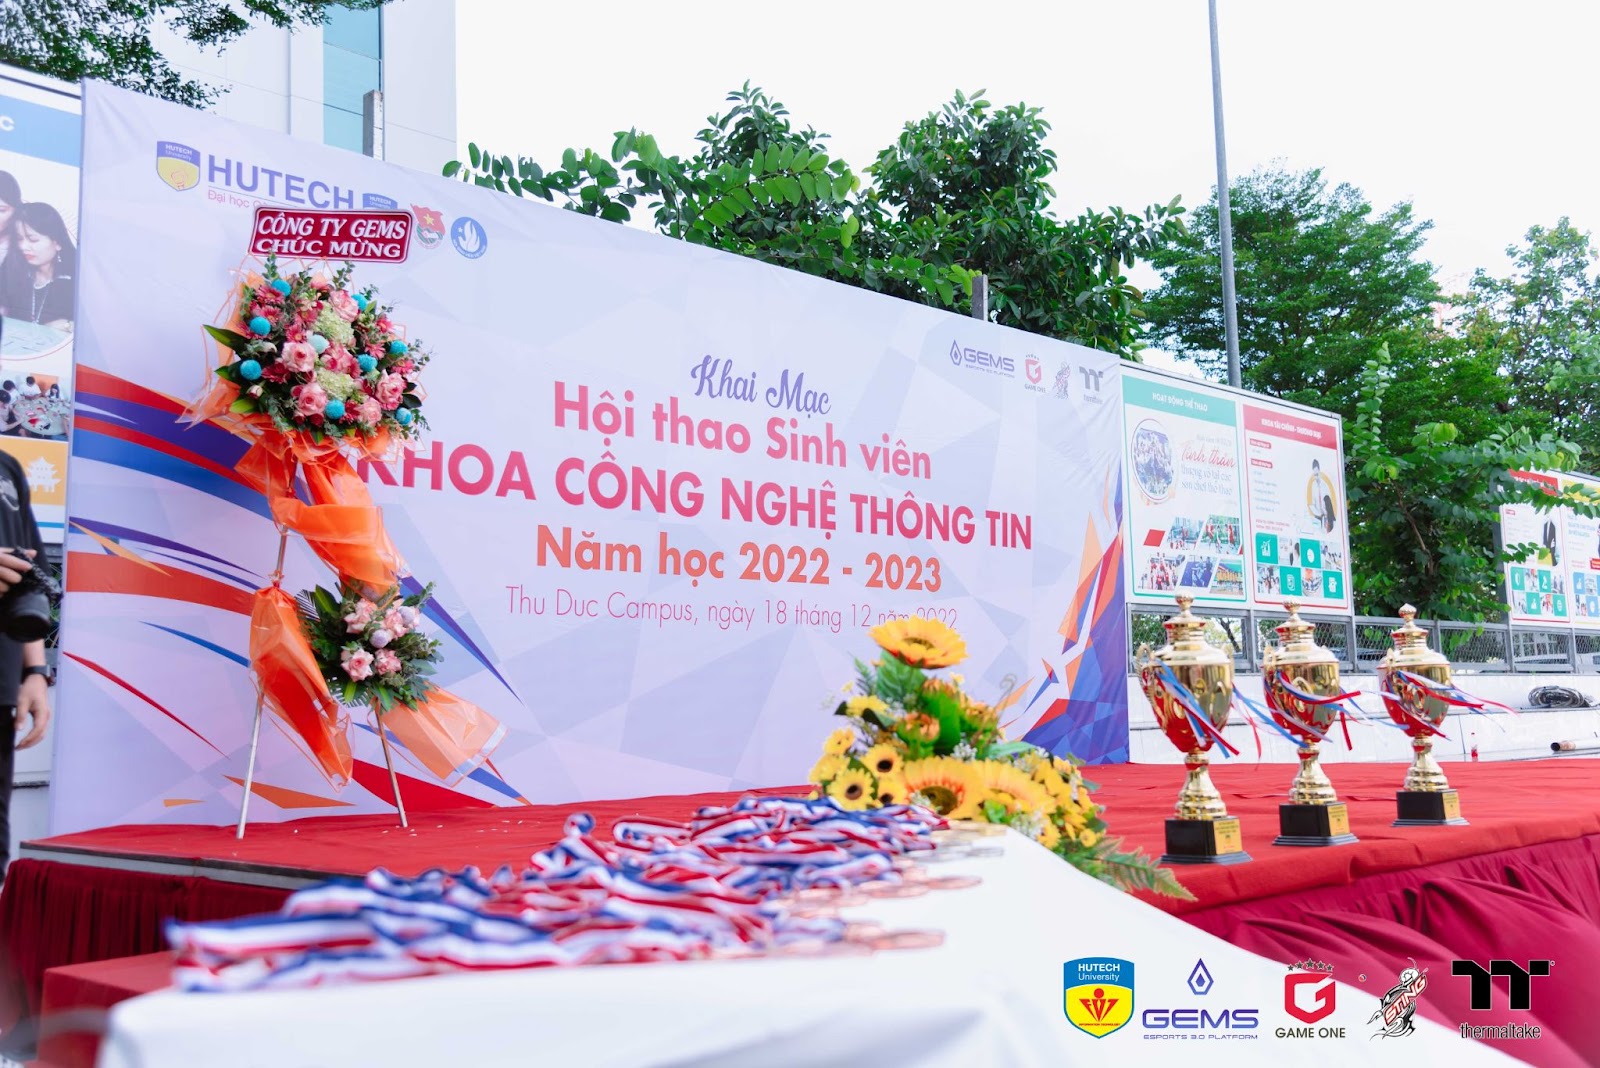 LỄ KHAI MẠC HỘI THAO KHOA CÔNG NGHỆ THÔNG TIN - IT HUTECH CHAMPIONSHIP 2022 4